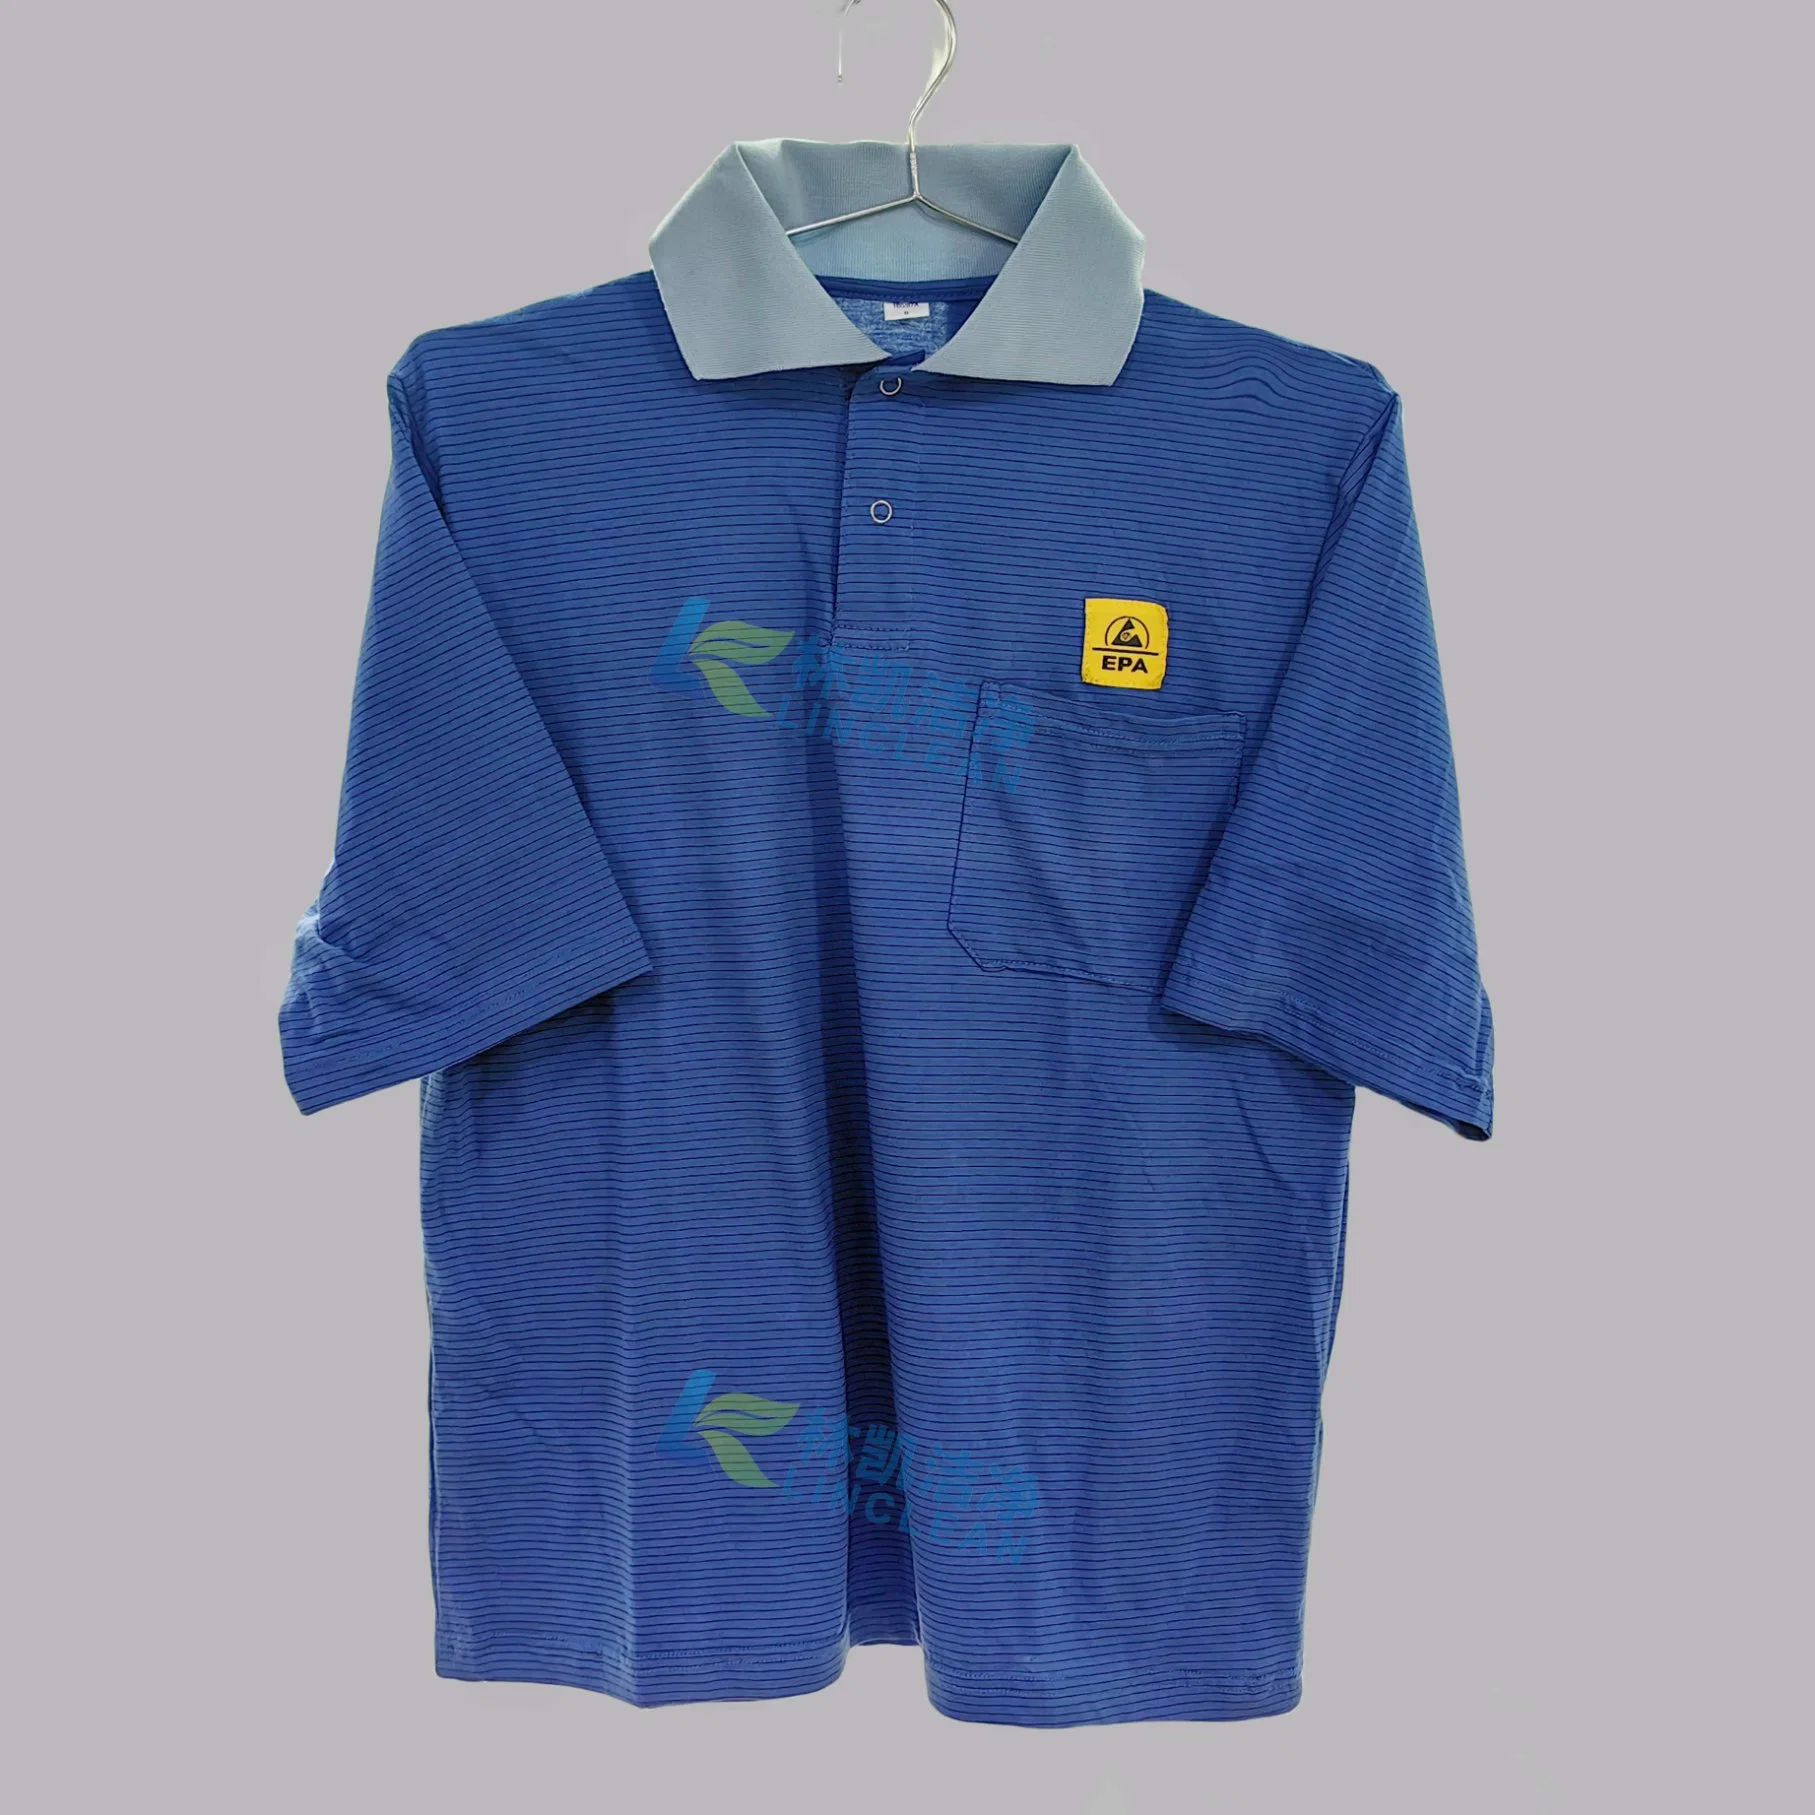 Camisetas suaves 97% algodón polo antiestático ropa de trabajo ESD transpirable